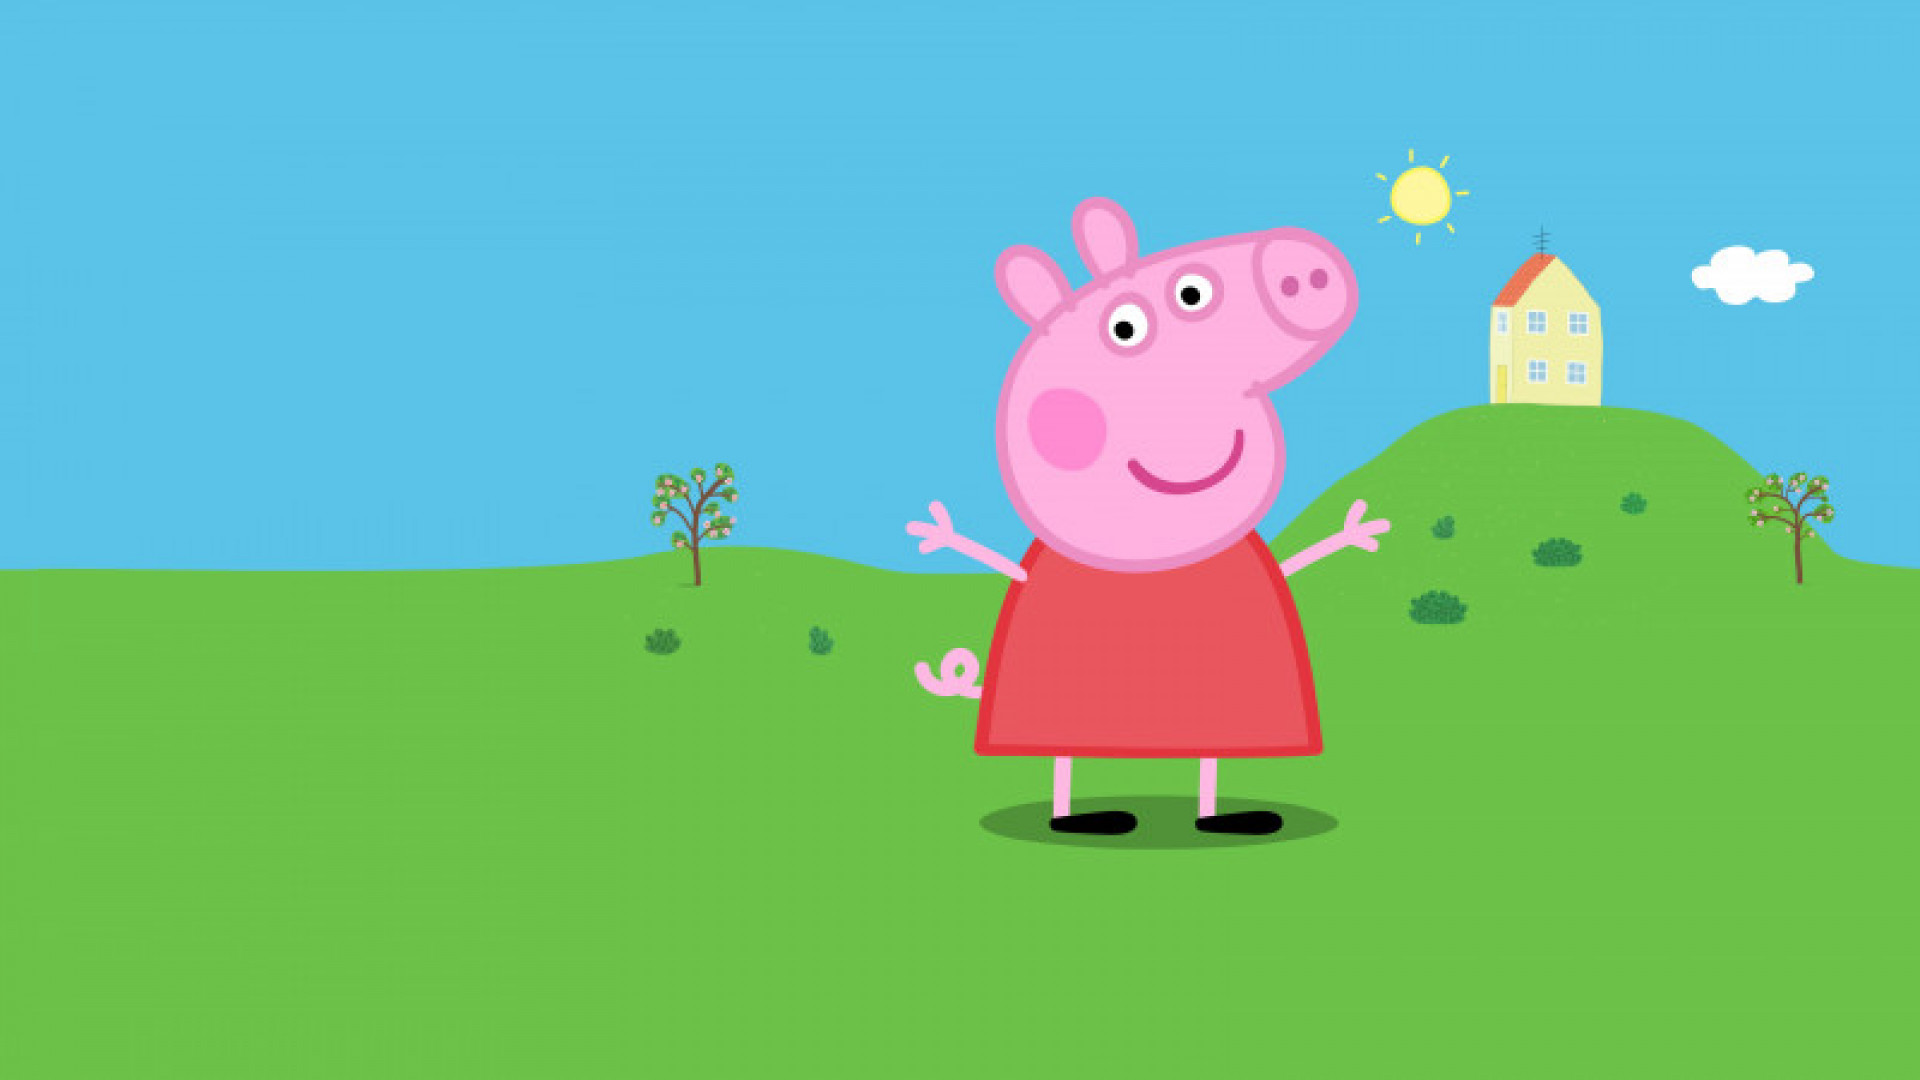 В детском мультфильме ”Свинка Пеппа” появились ЛГБТ-персонажи: 07 сентября  2022, 20:54 - новости на Tengrinews.kz